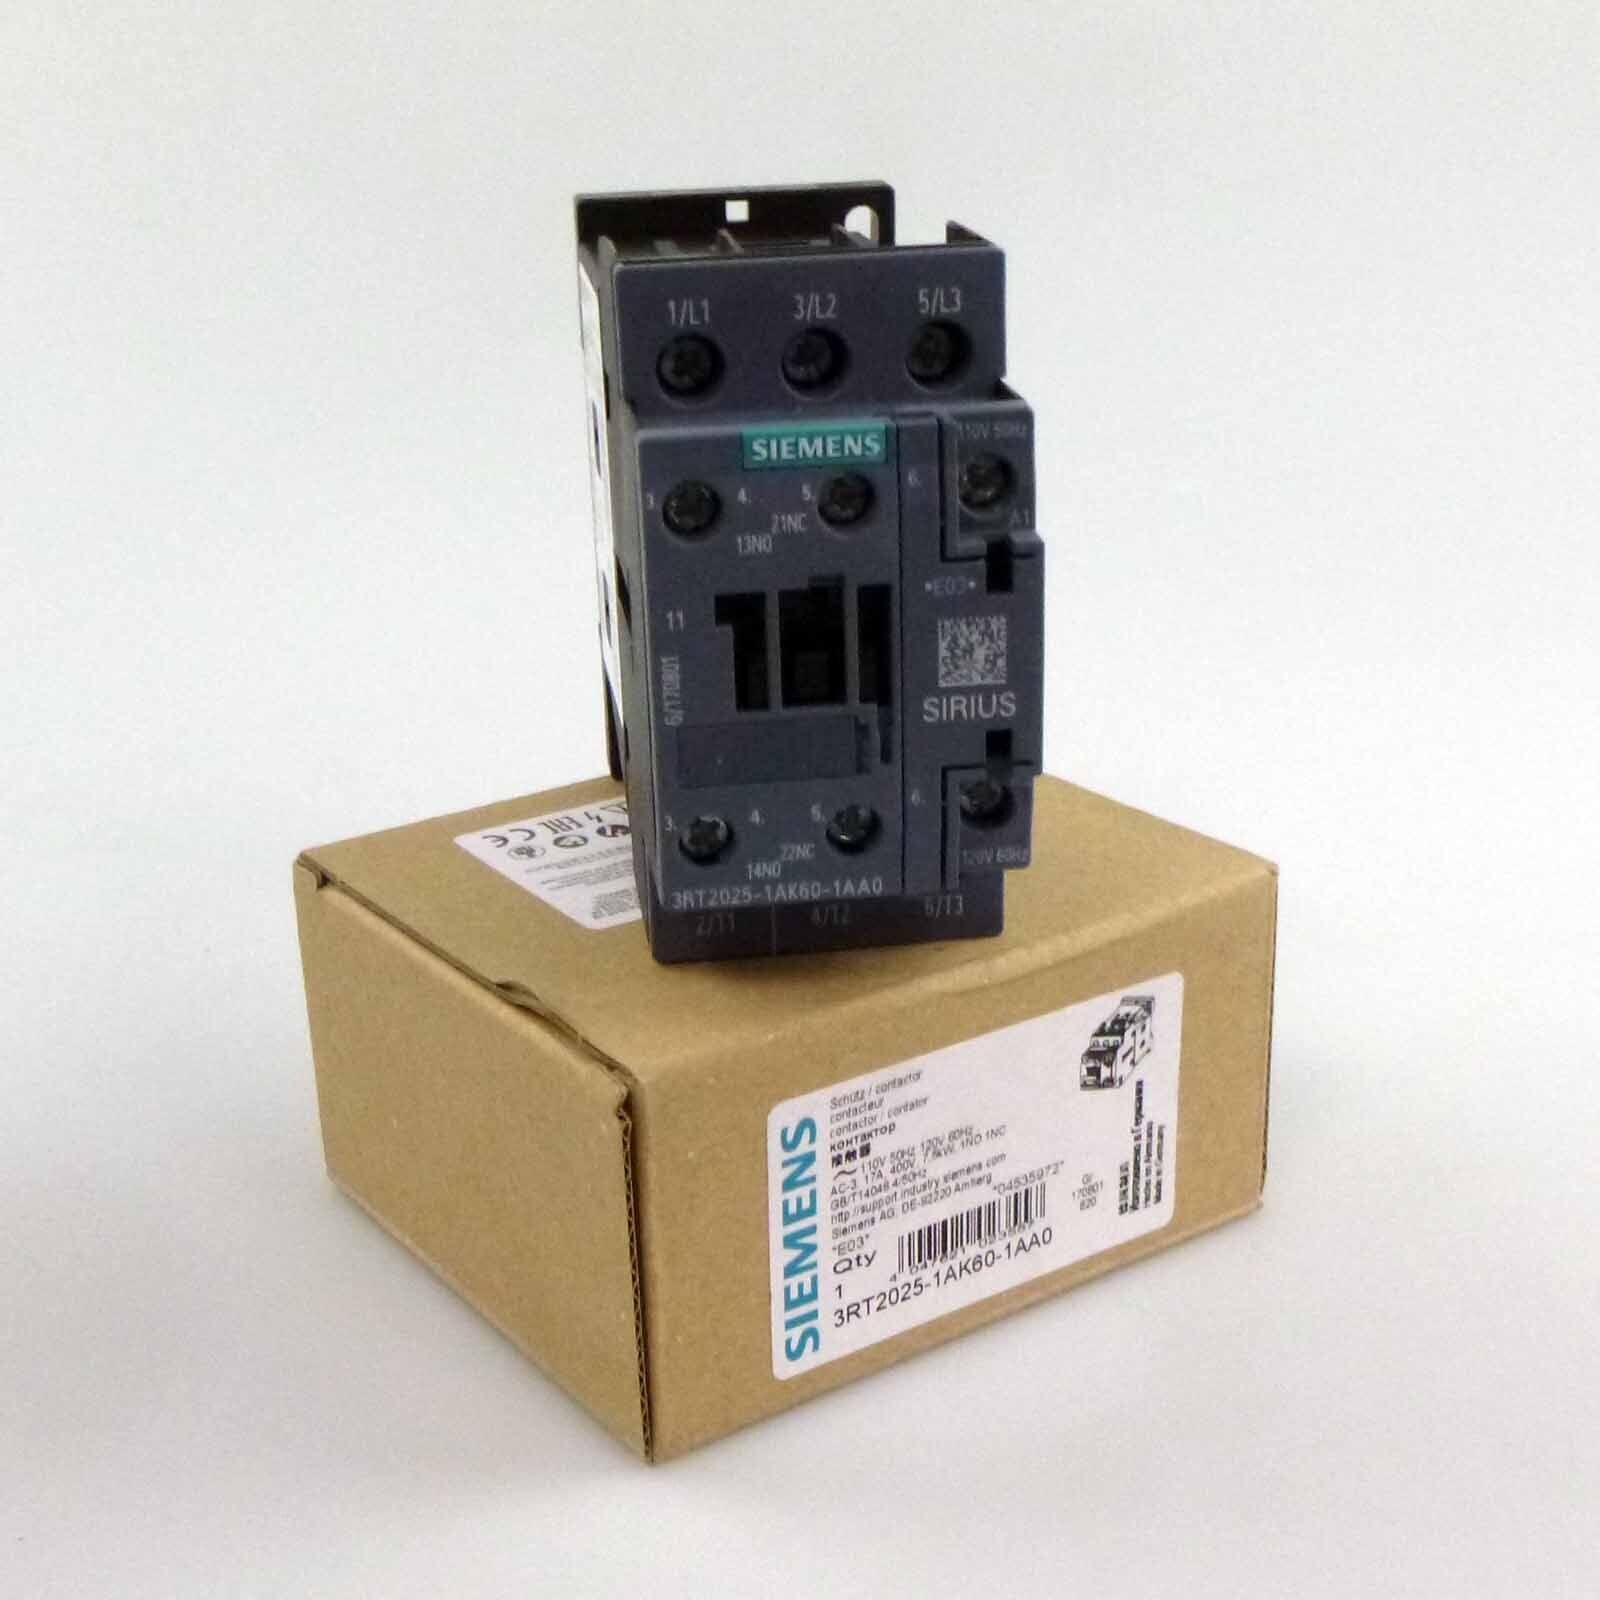 Siemens power contactor 3RT2025-1AK60-1AA0 original packaging